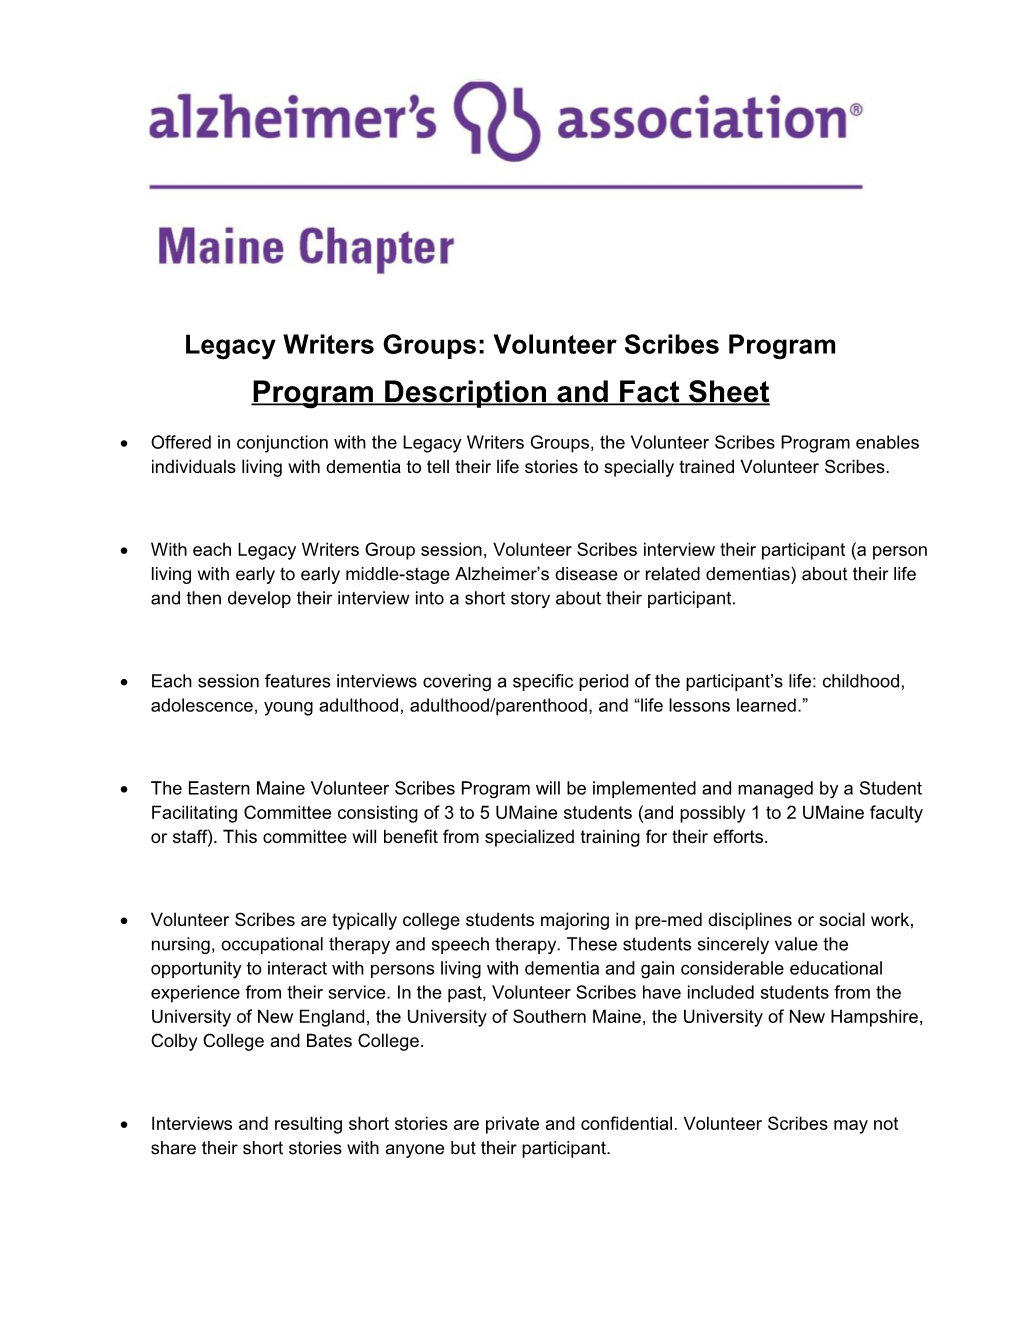 Legacy Writers Groups: Volunteer Scribes Program